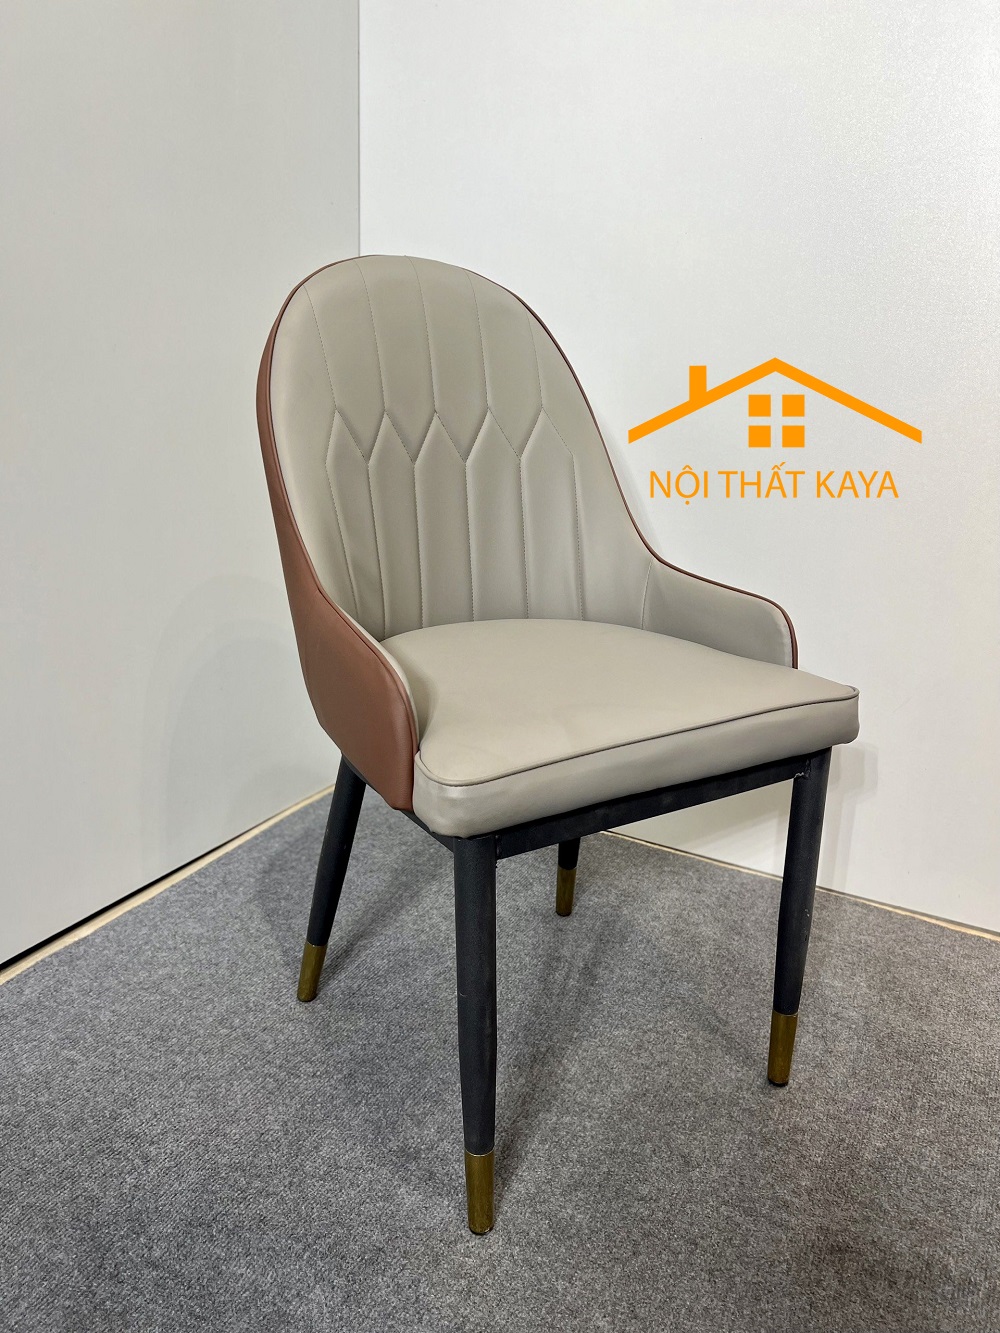 Ghế Hera Tay Nhập Khẩu Bọc Da Microfiber Cao Cấp - Khung và chân ghế bằng Thép Carbon sơn tĩnh điện chống rỉ sét KY-GH18S